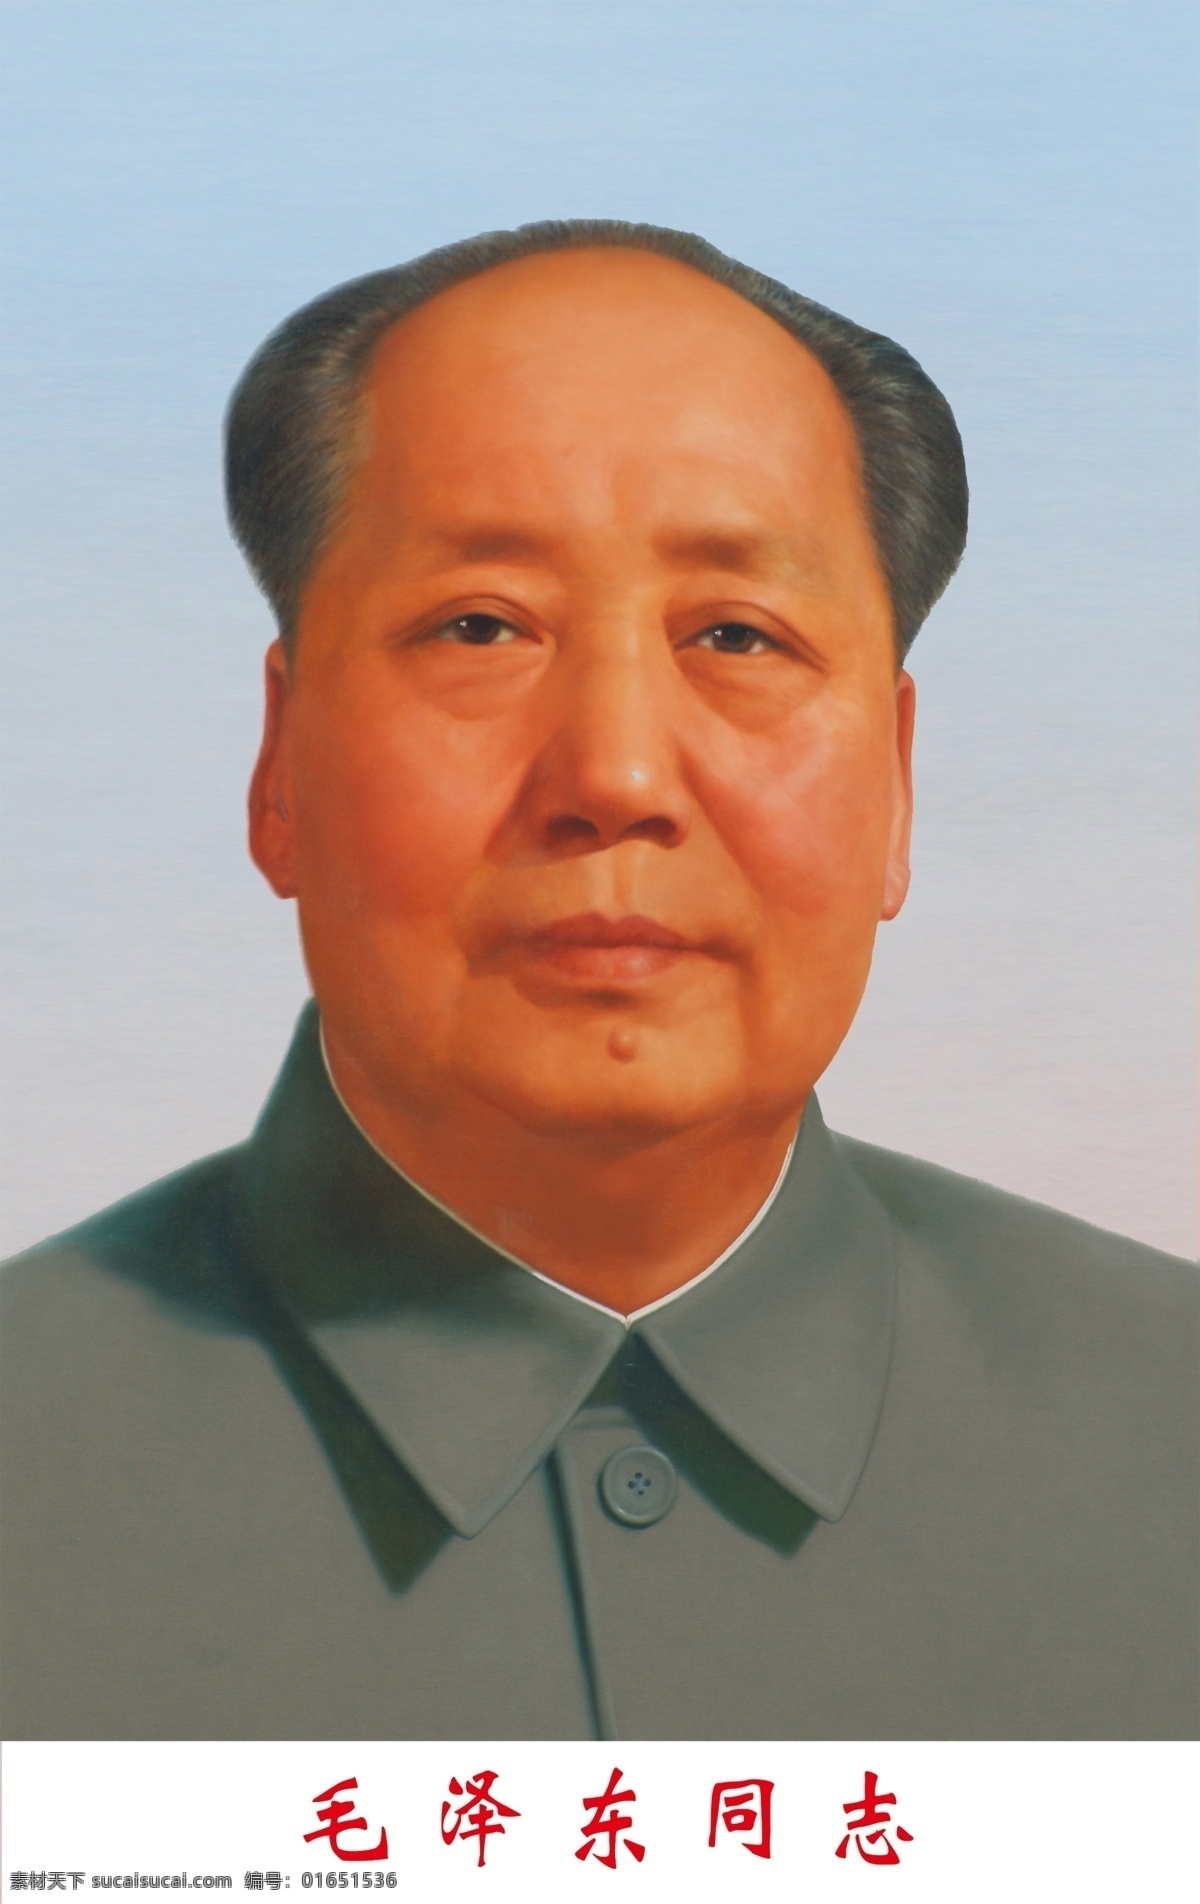 毛主席 毛泽东 领导人 党 共产党